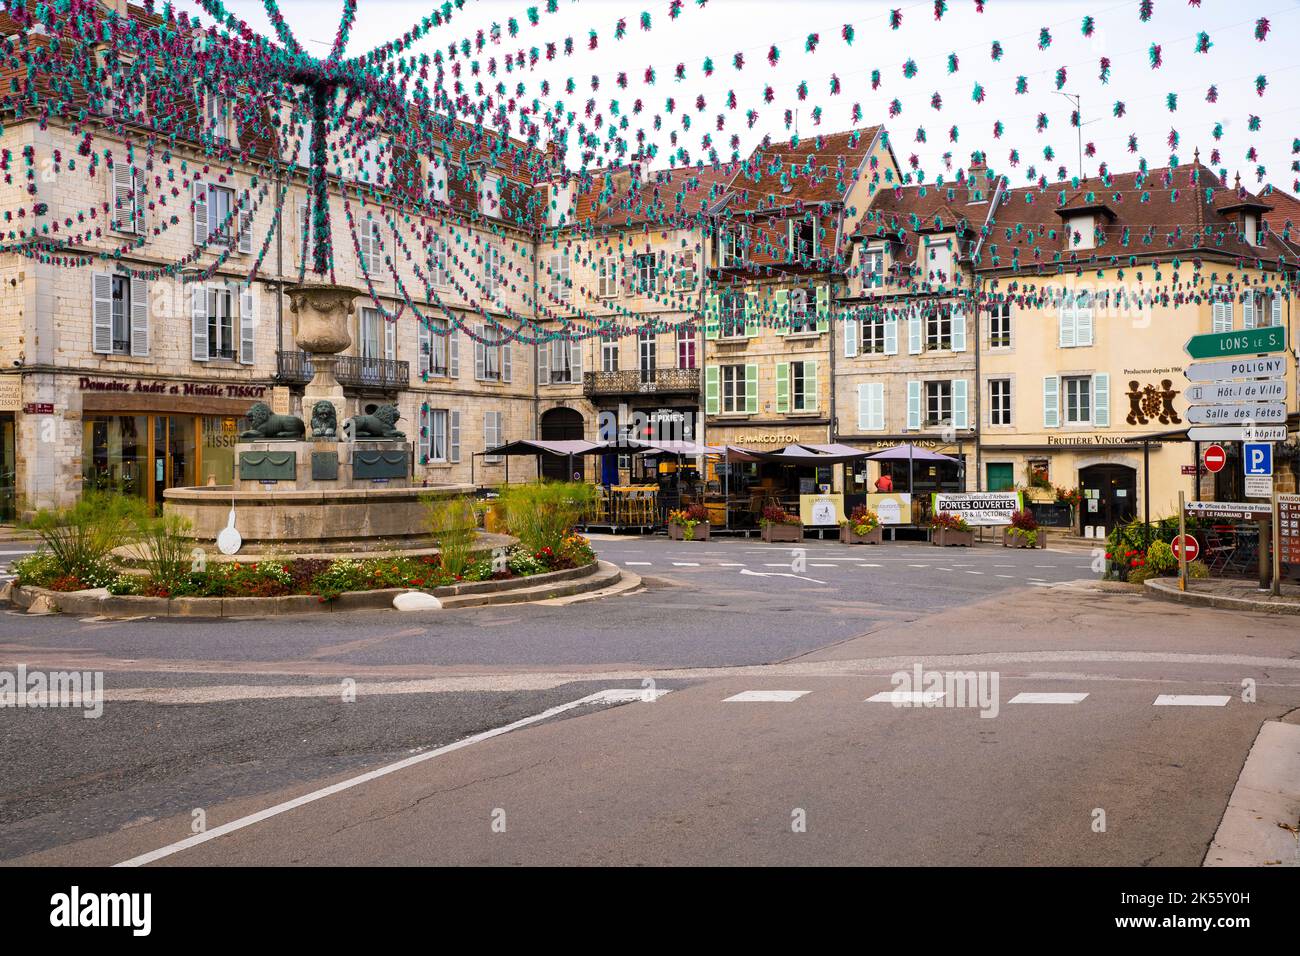 Centre-ville d'Arbois. Arbois est une commune au coeur de la région viticole du Jura dans l'est de la France. Banque D'Images